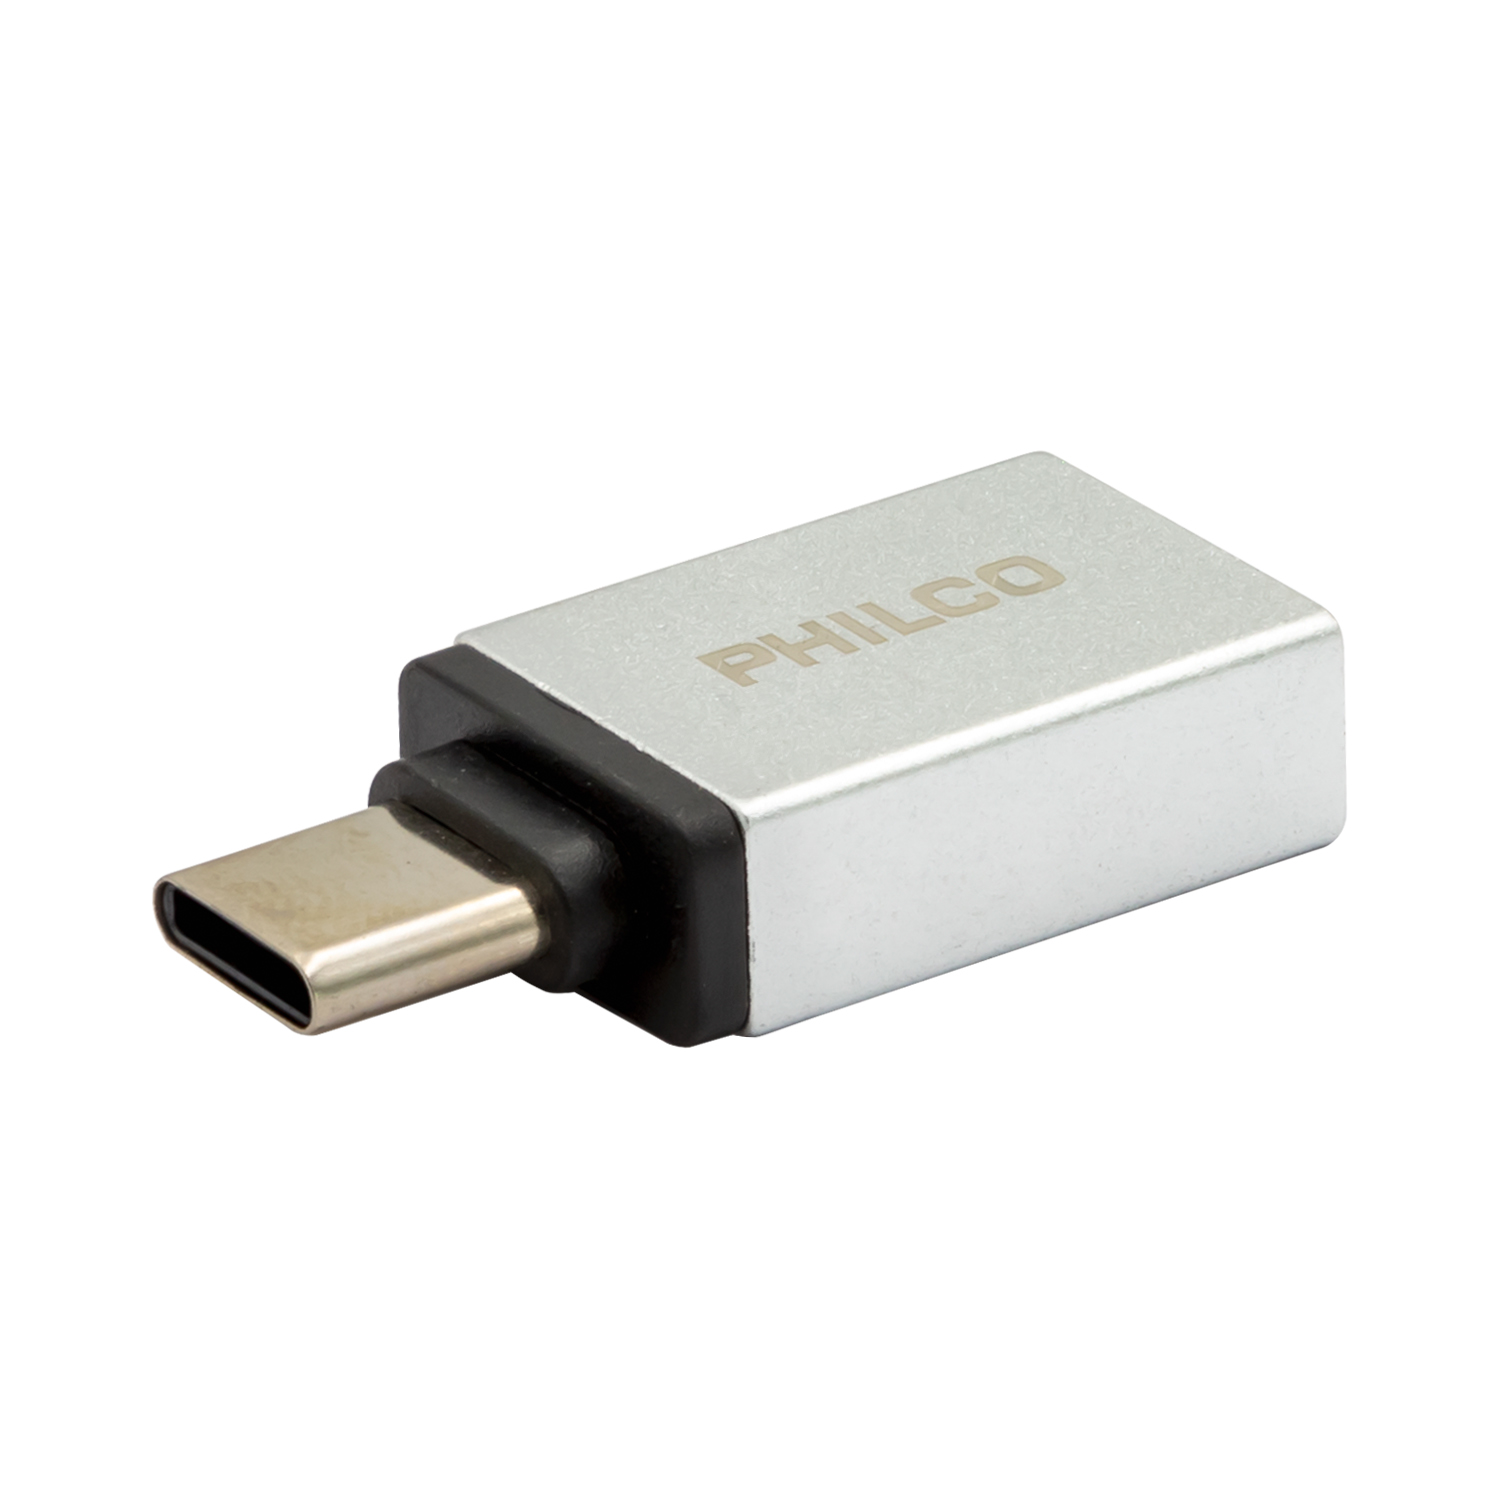 ADAPTADOR USB-C A USB 3.0 BR114 MINI